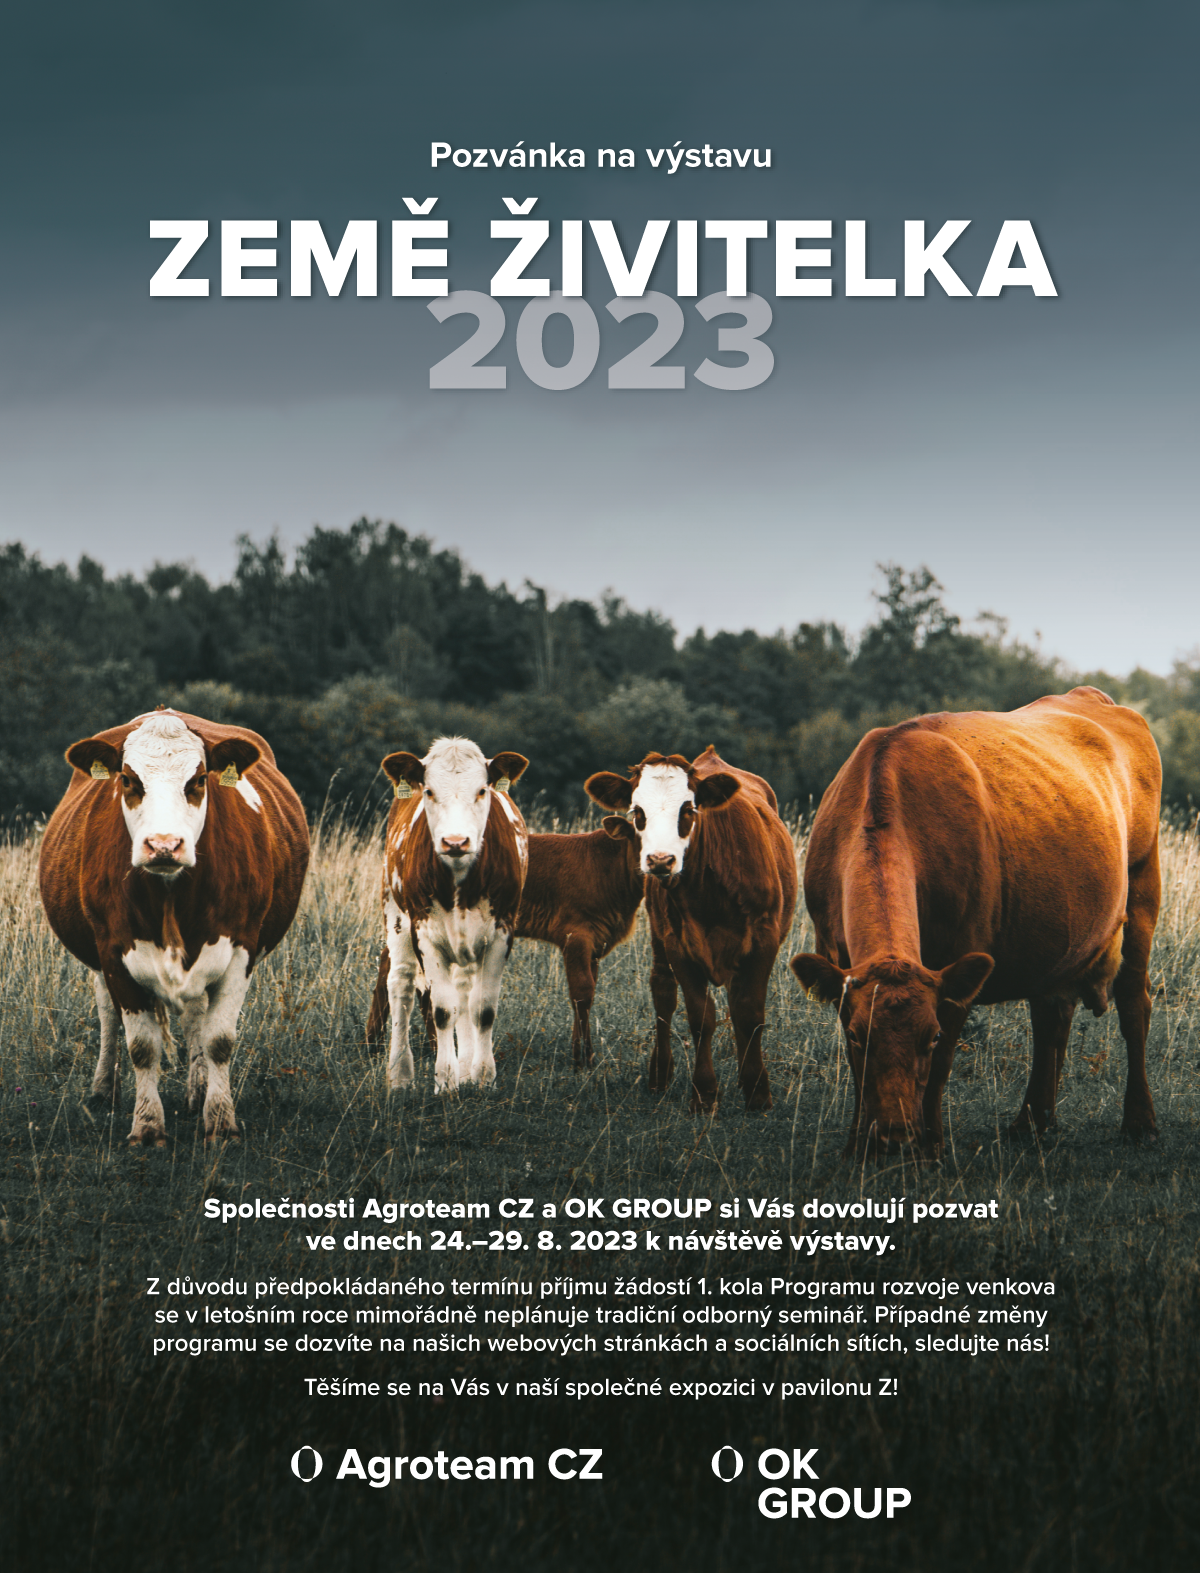 https://www.okgroup.cz/media/aktuality/zeme-zivitelka-bulletin-2023-ln-bold.png